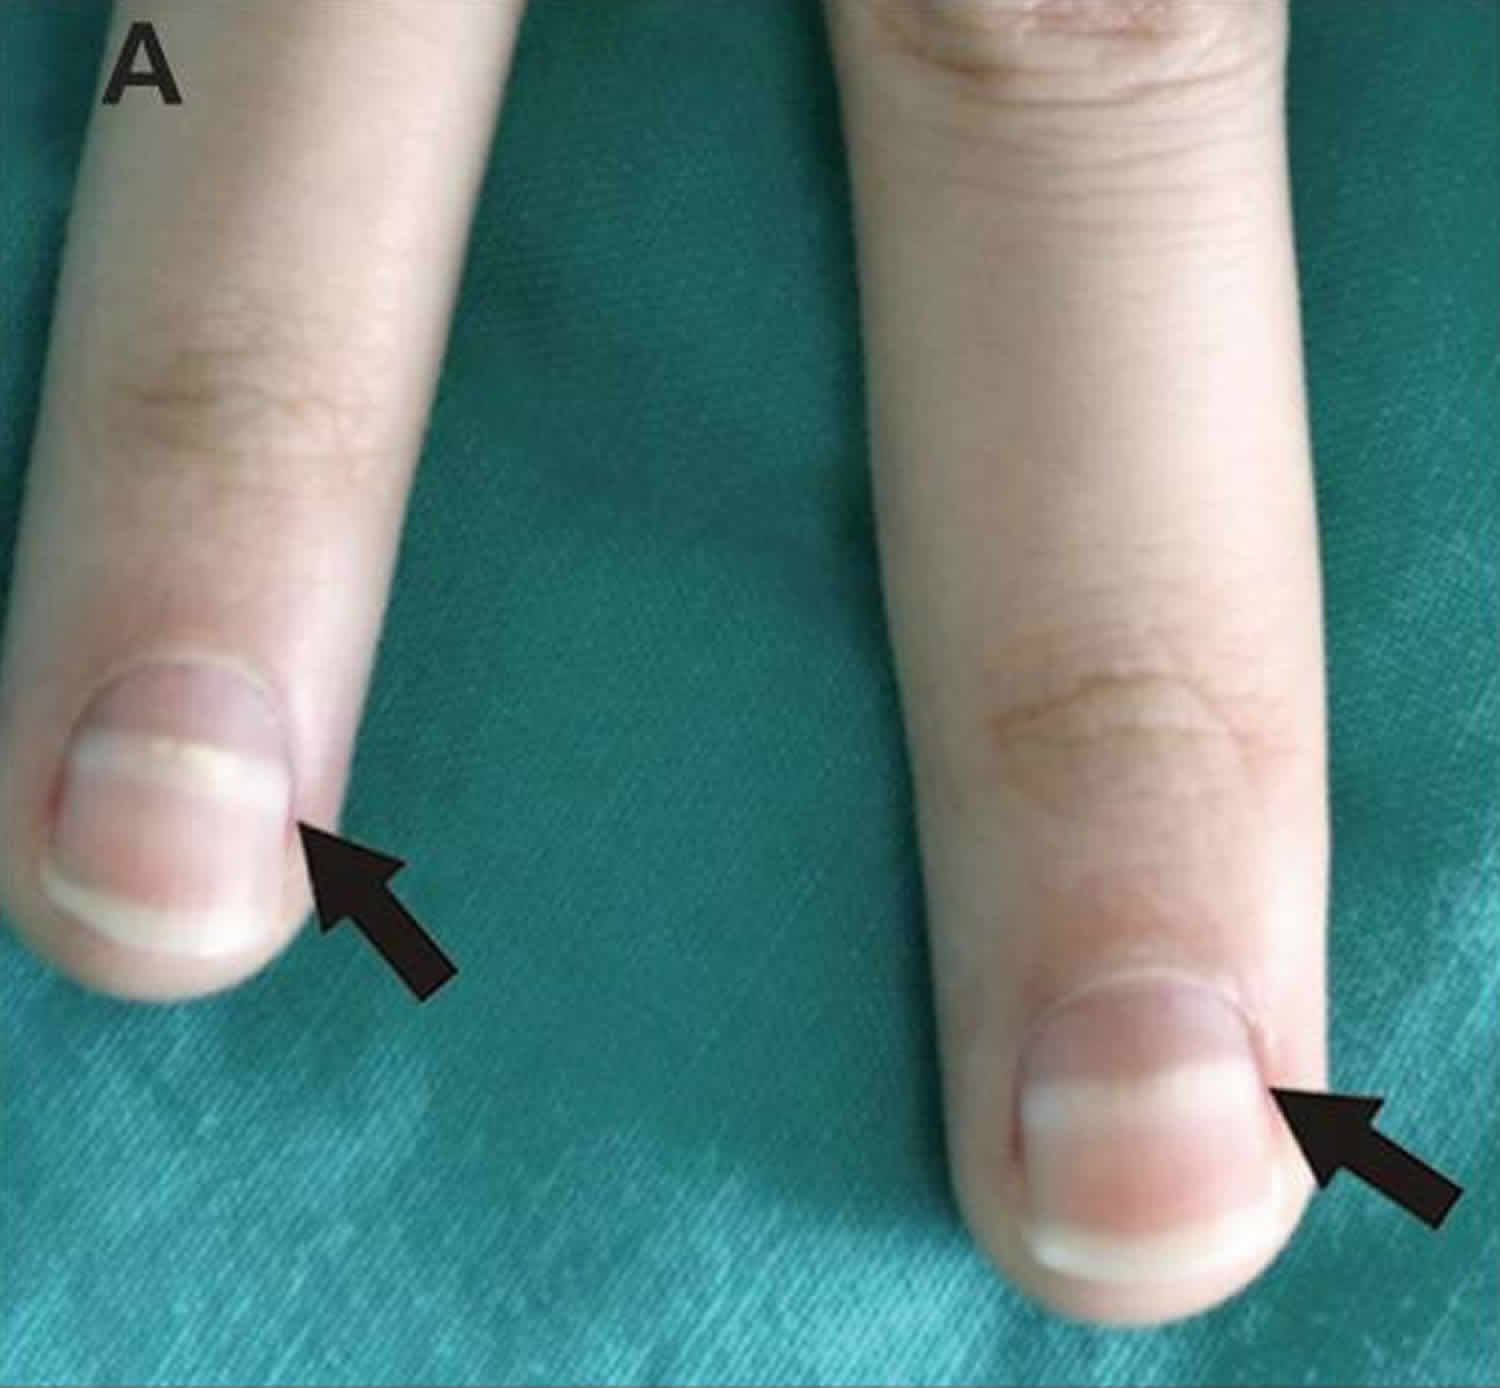 Mees lines fingernails causes, symptoms & treatment